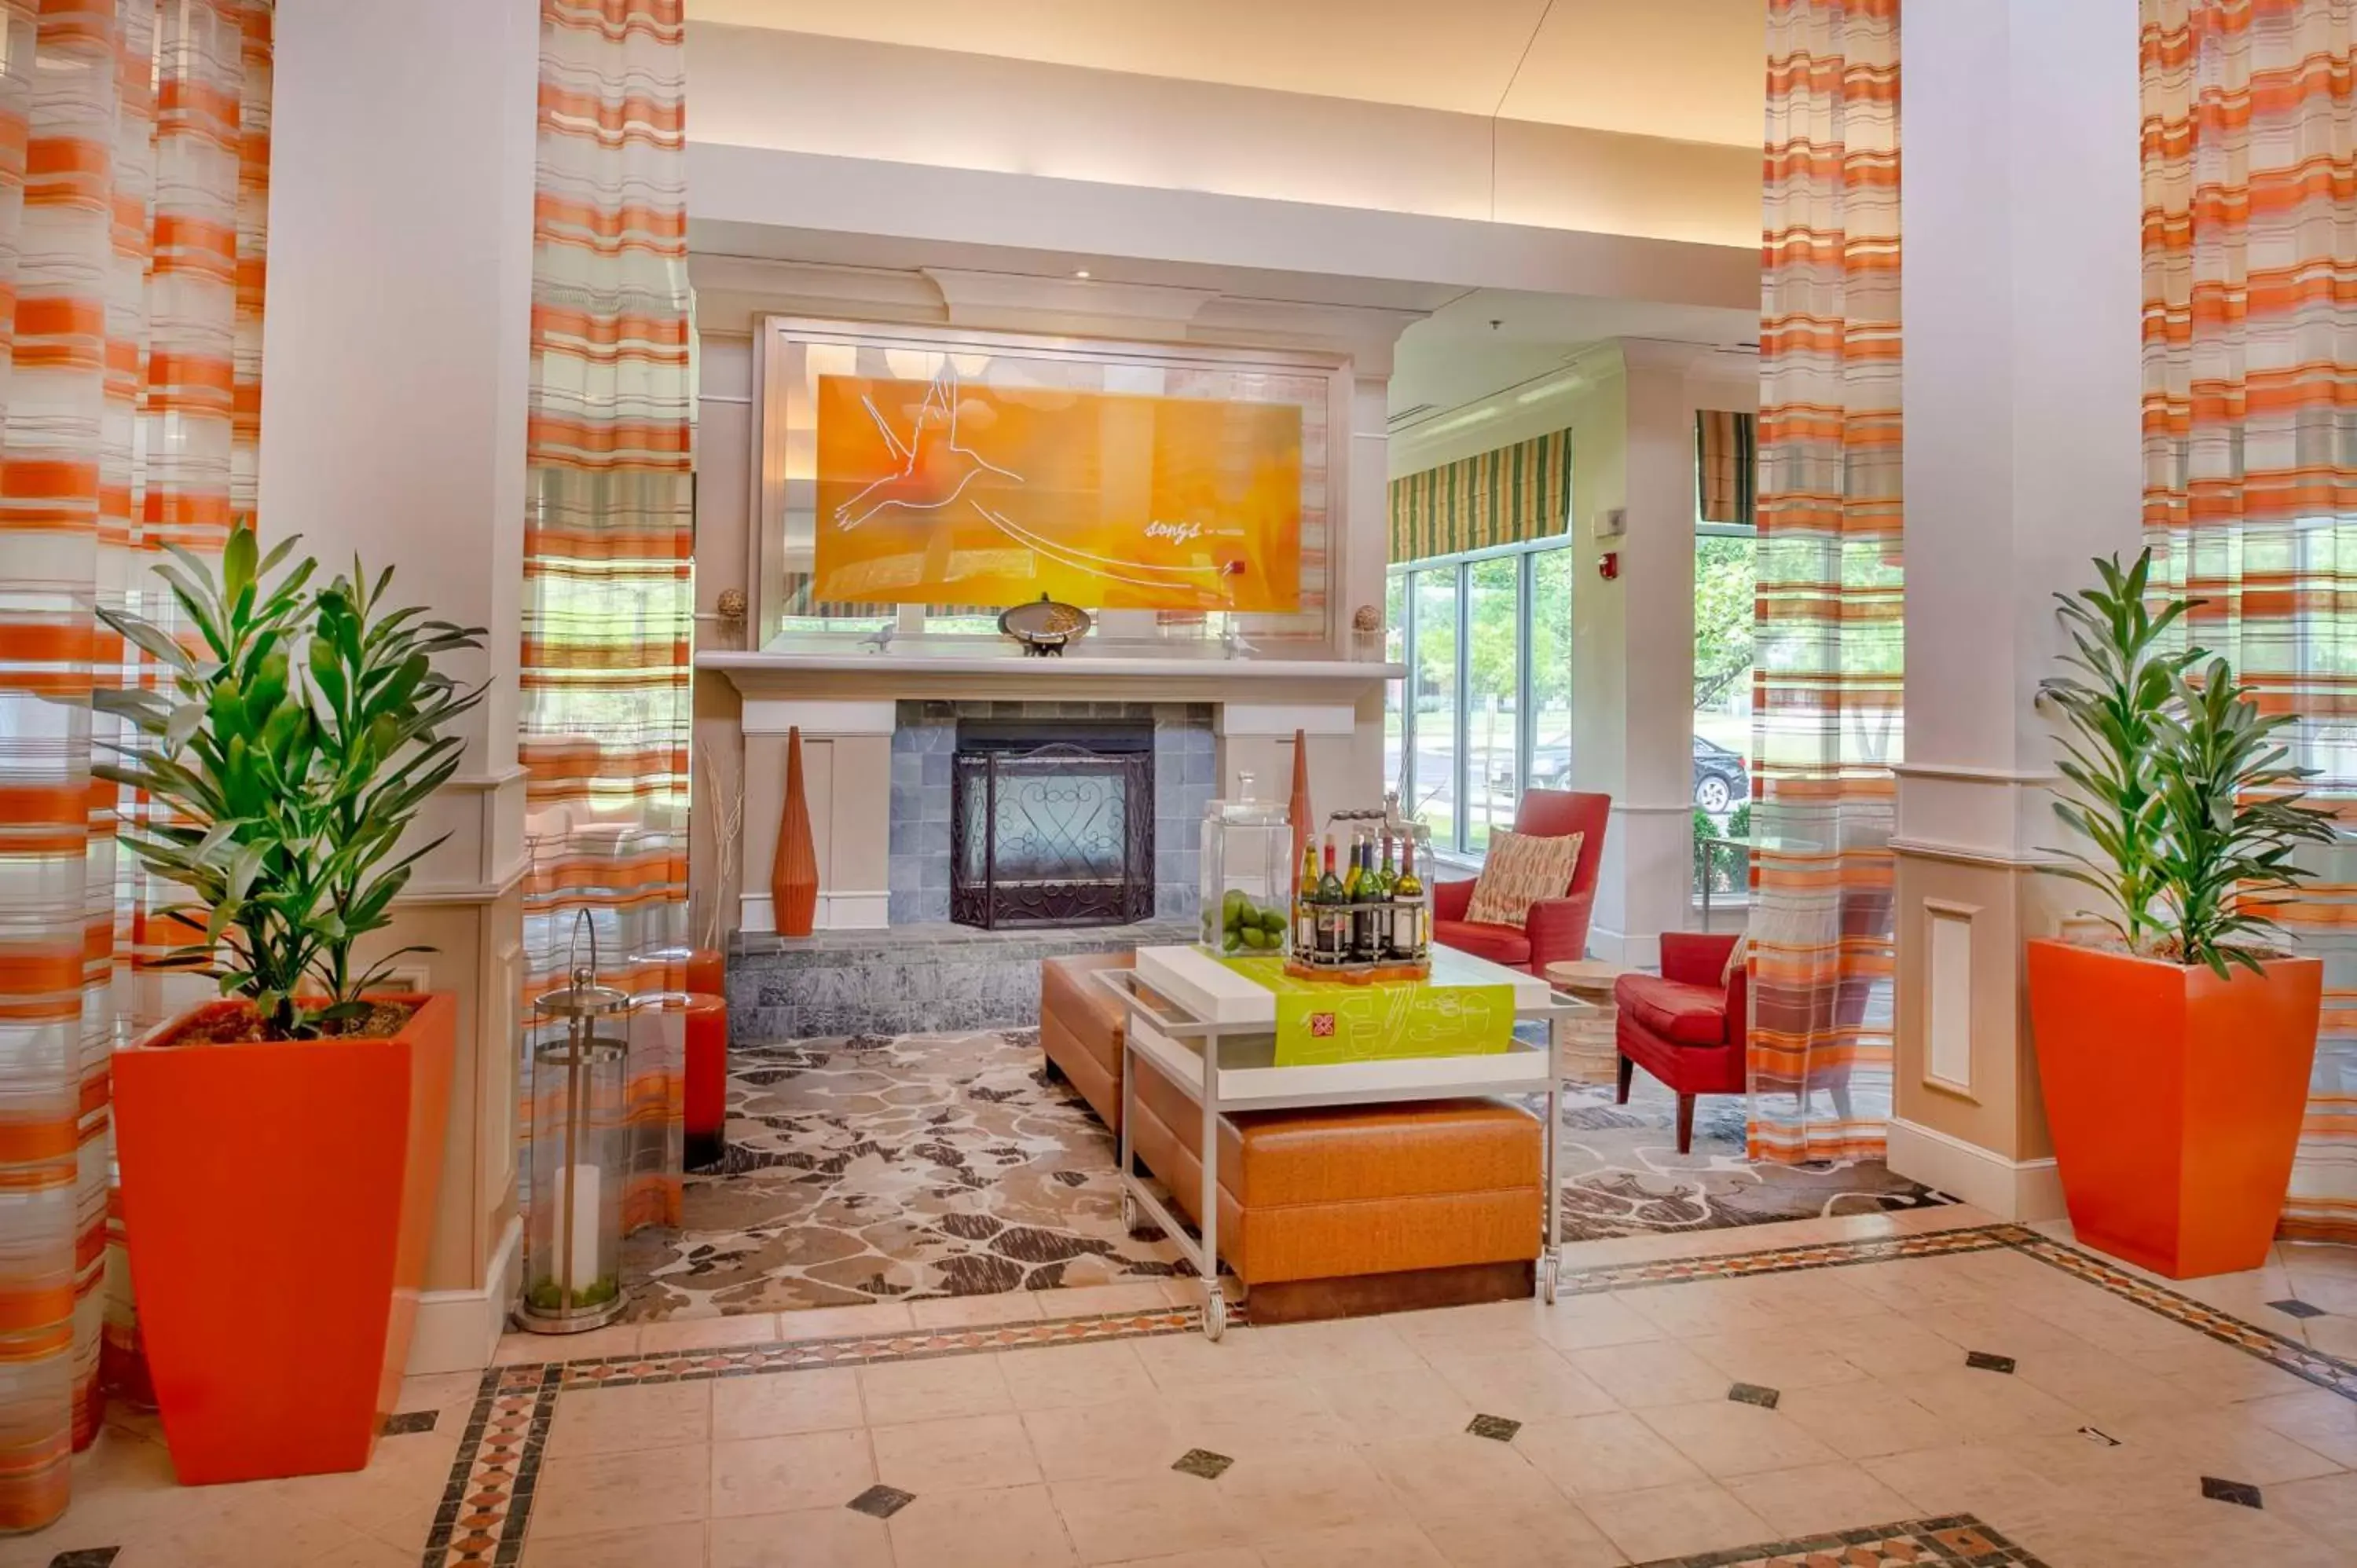 Lobby or reception, Lobby/Reception in Hilton Garden Inn St. Louis/Chesterfield